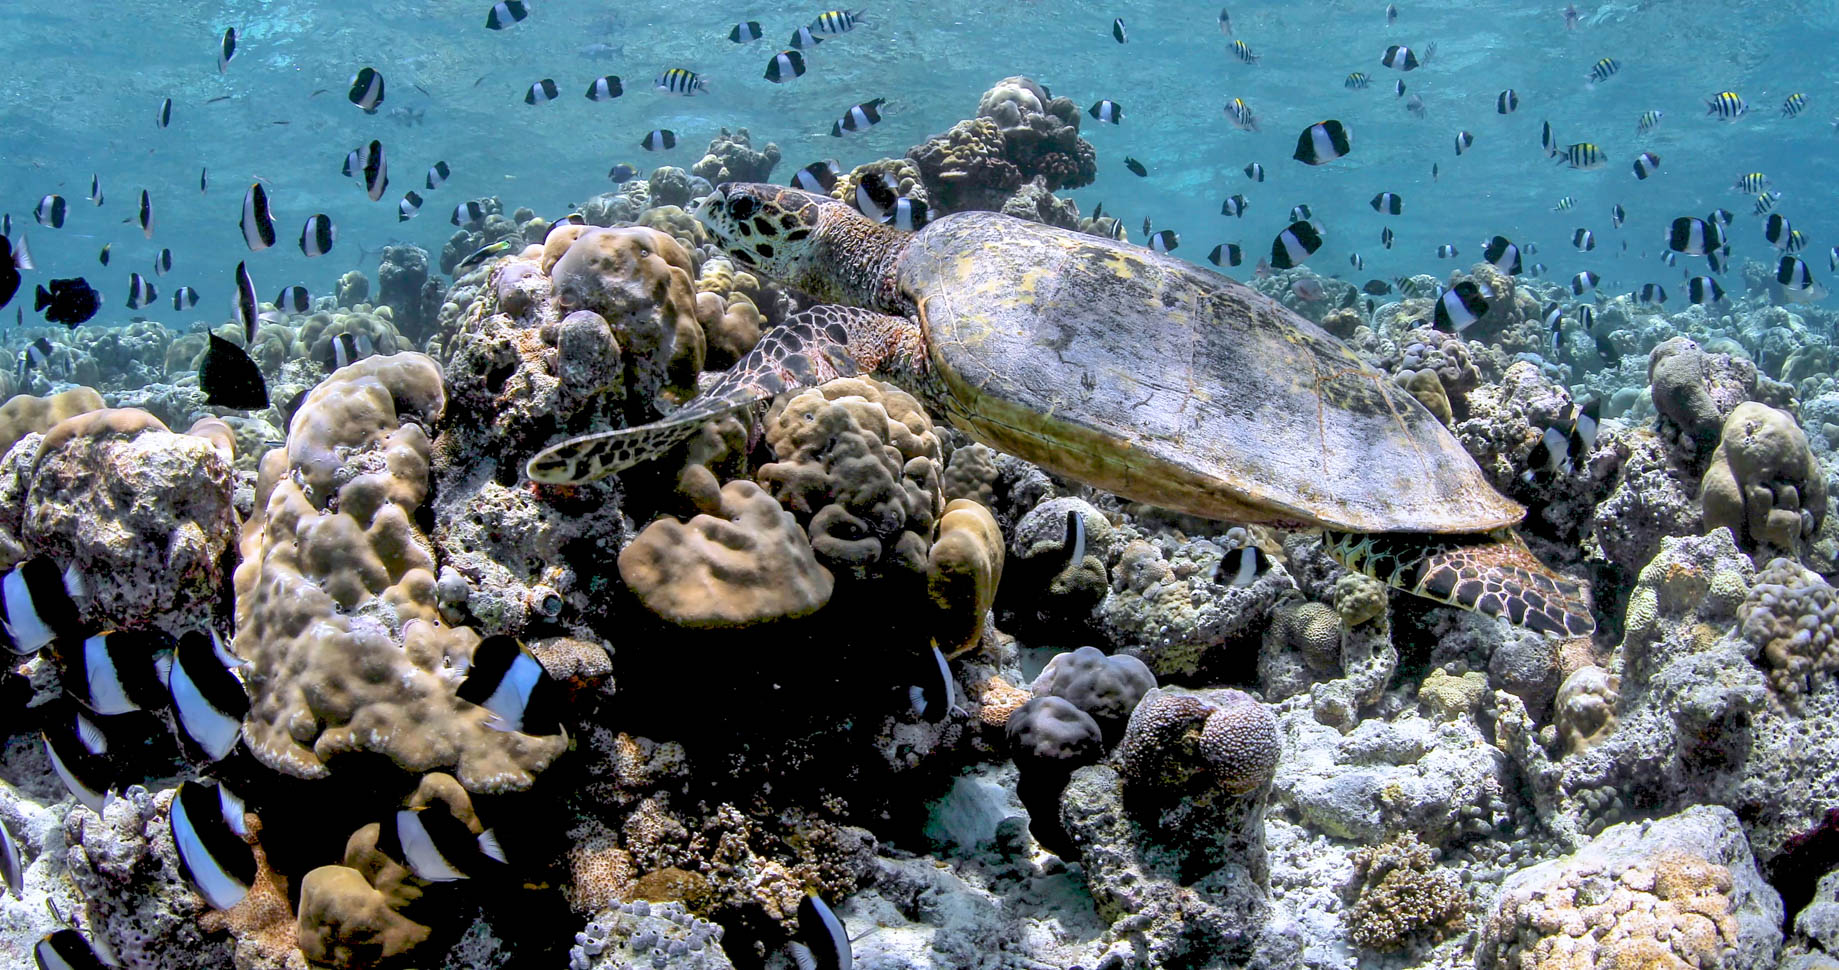 Anantara Kihavah Maldives Villas Resort – Baa Atoll, Maldives – House Reef Turtle